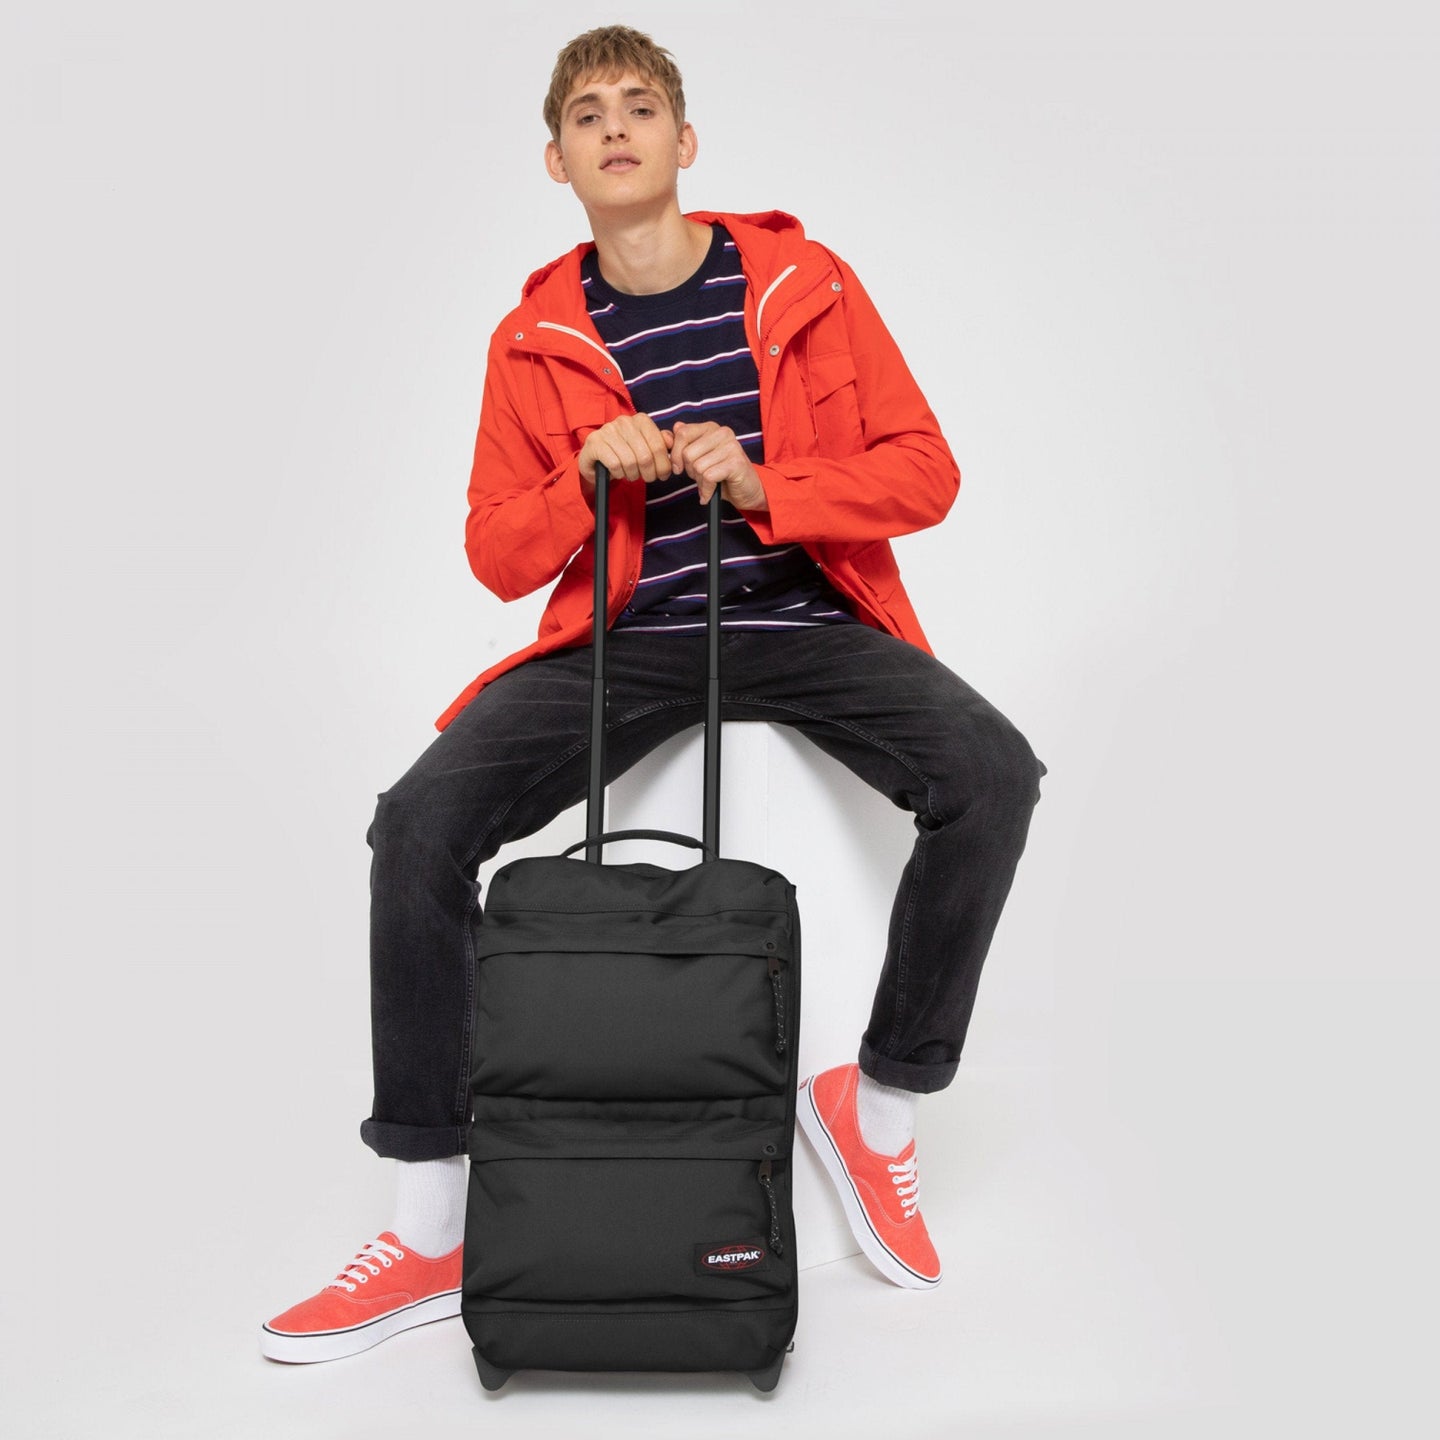 Eastpak Tranverz S Cabin Suitcase - Volt Black – thebackpacker